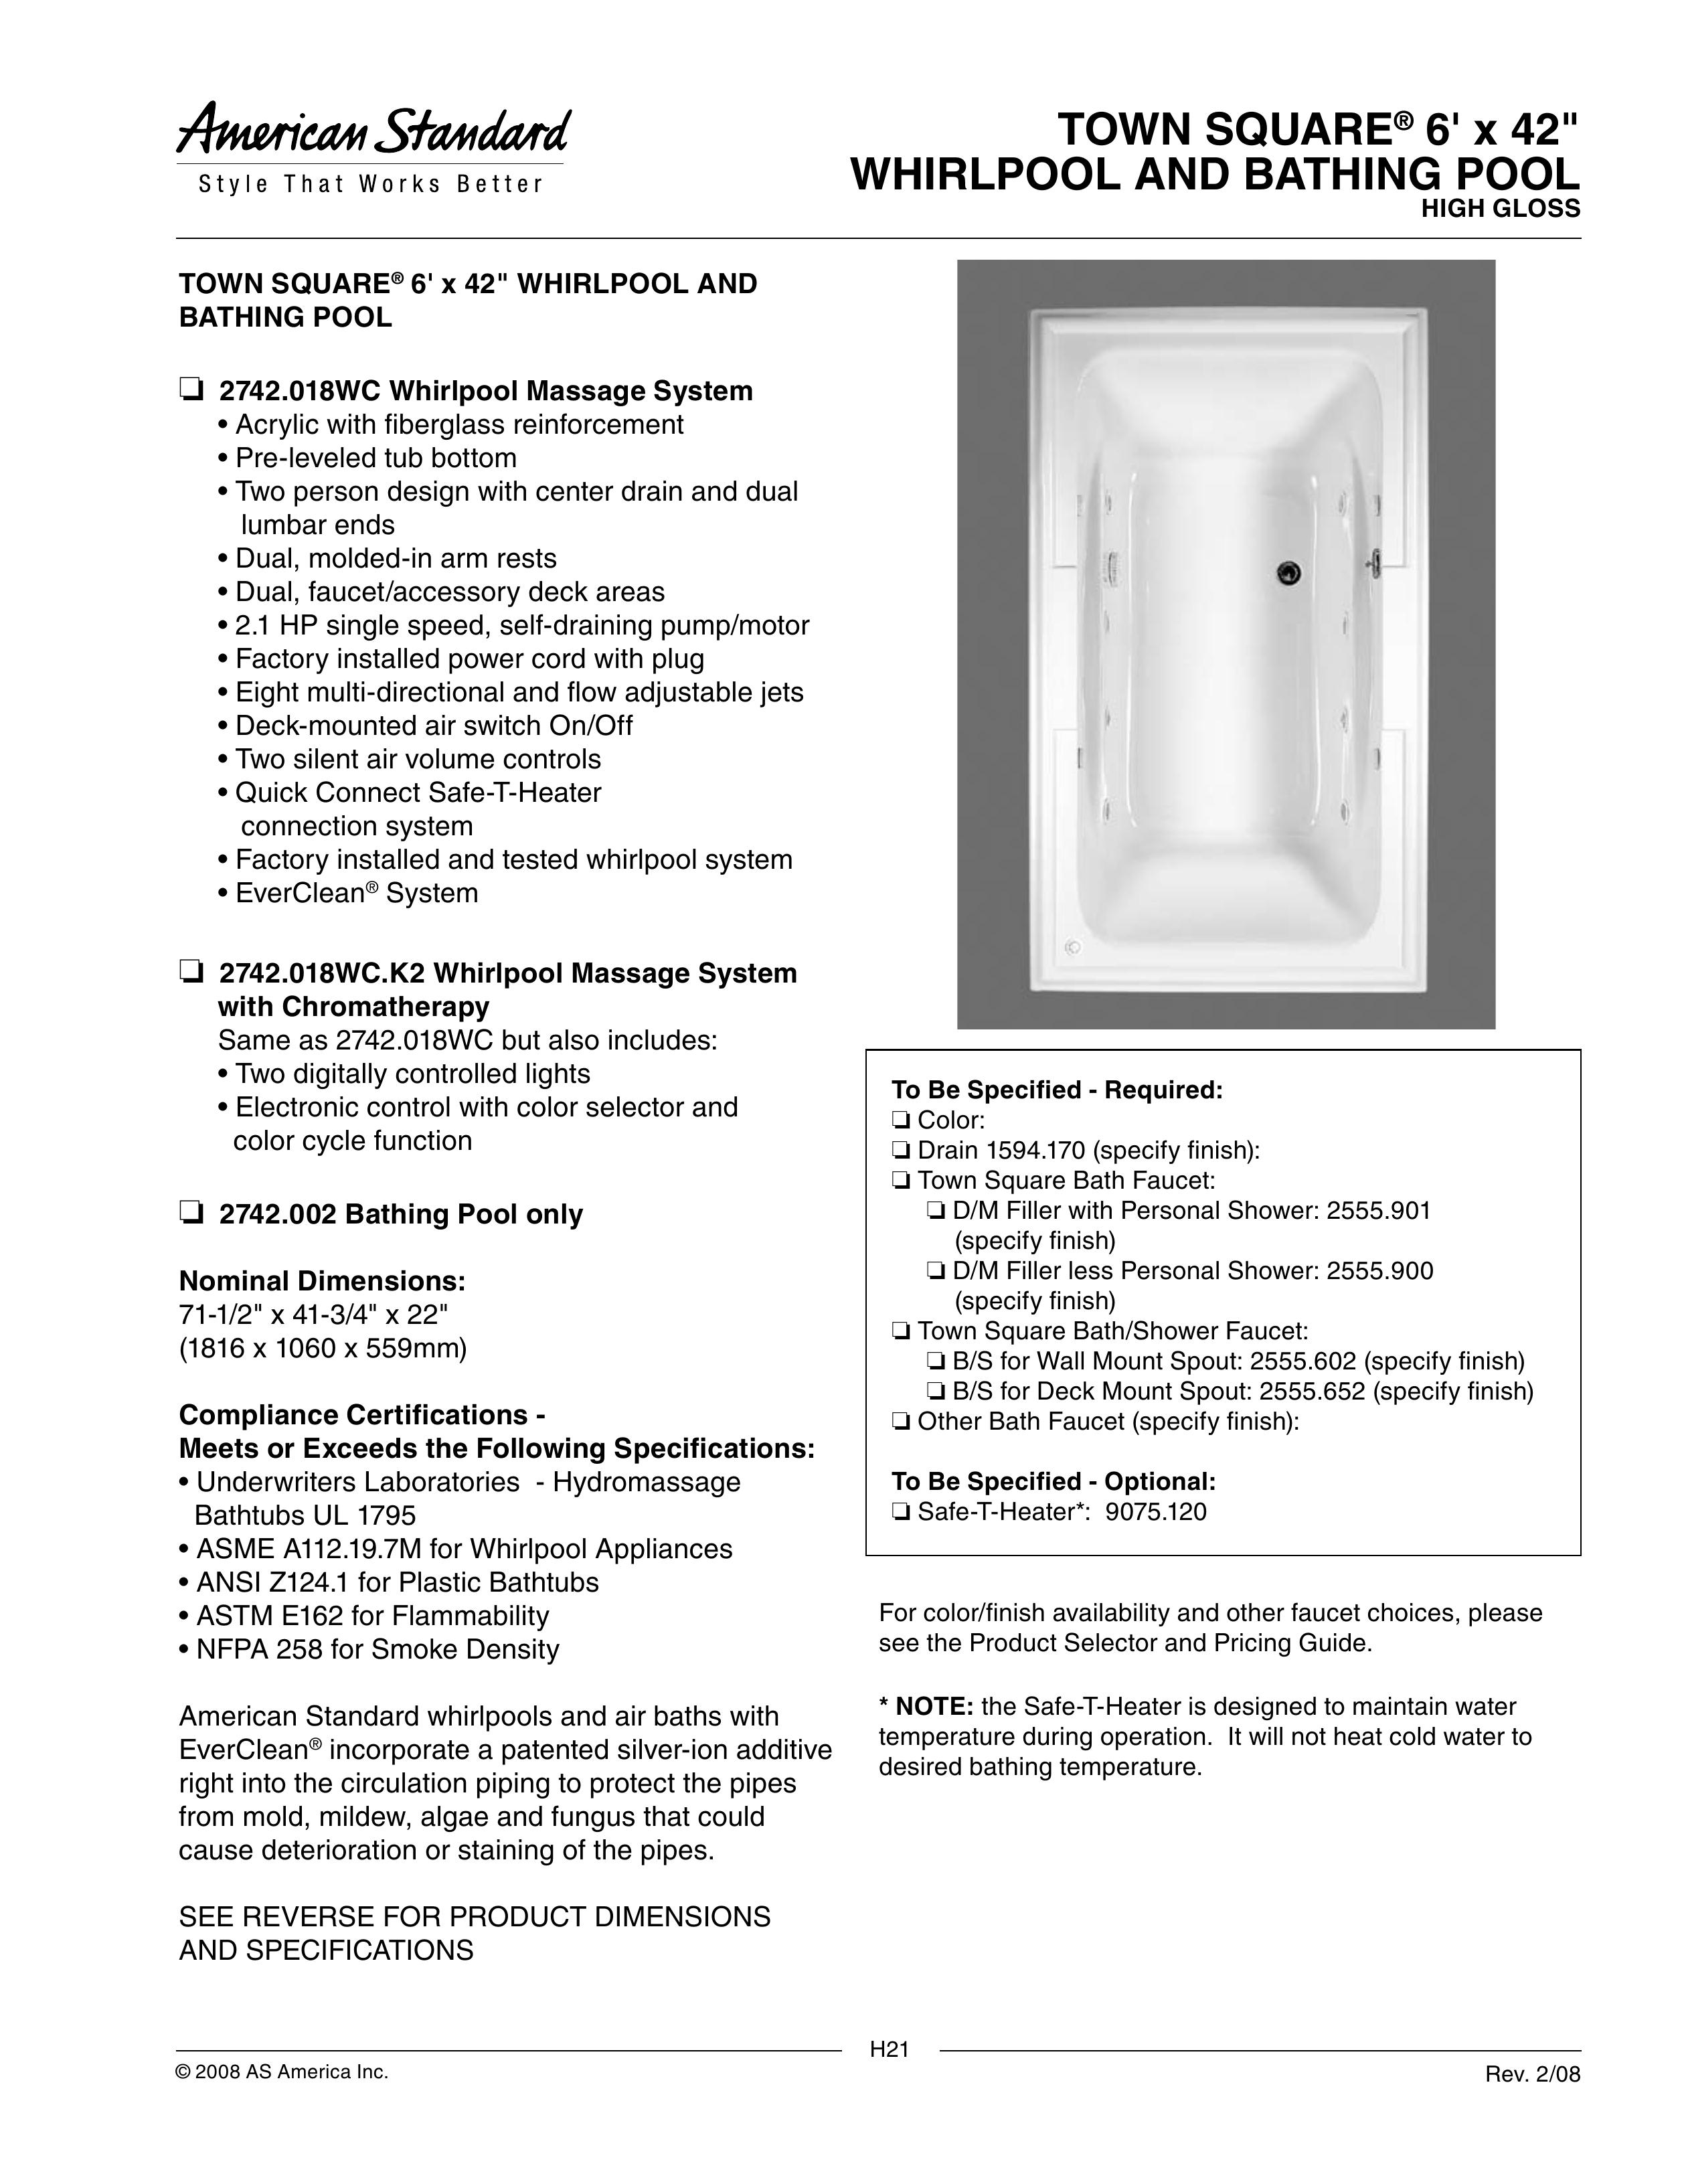 American Standard 2742.002 Swimming Pool User Manual